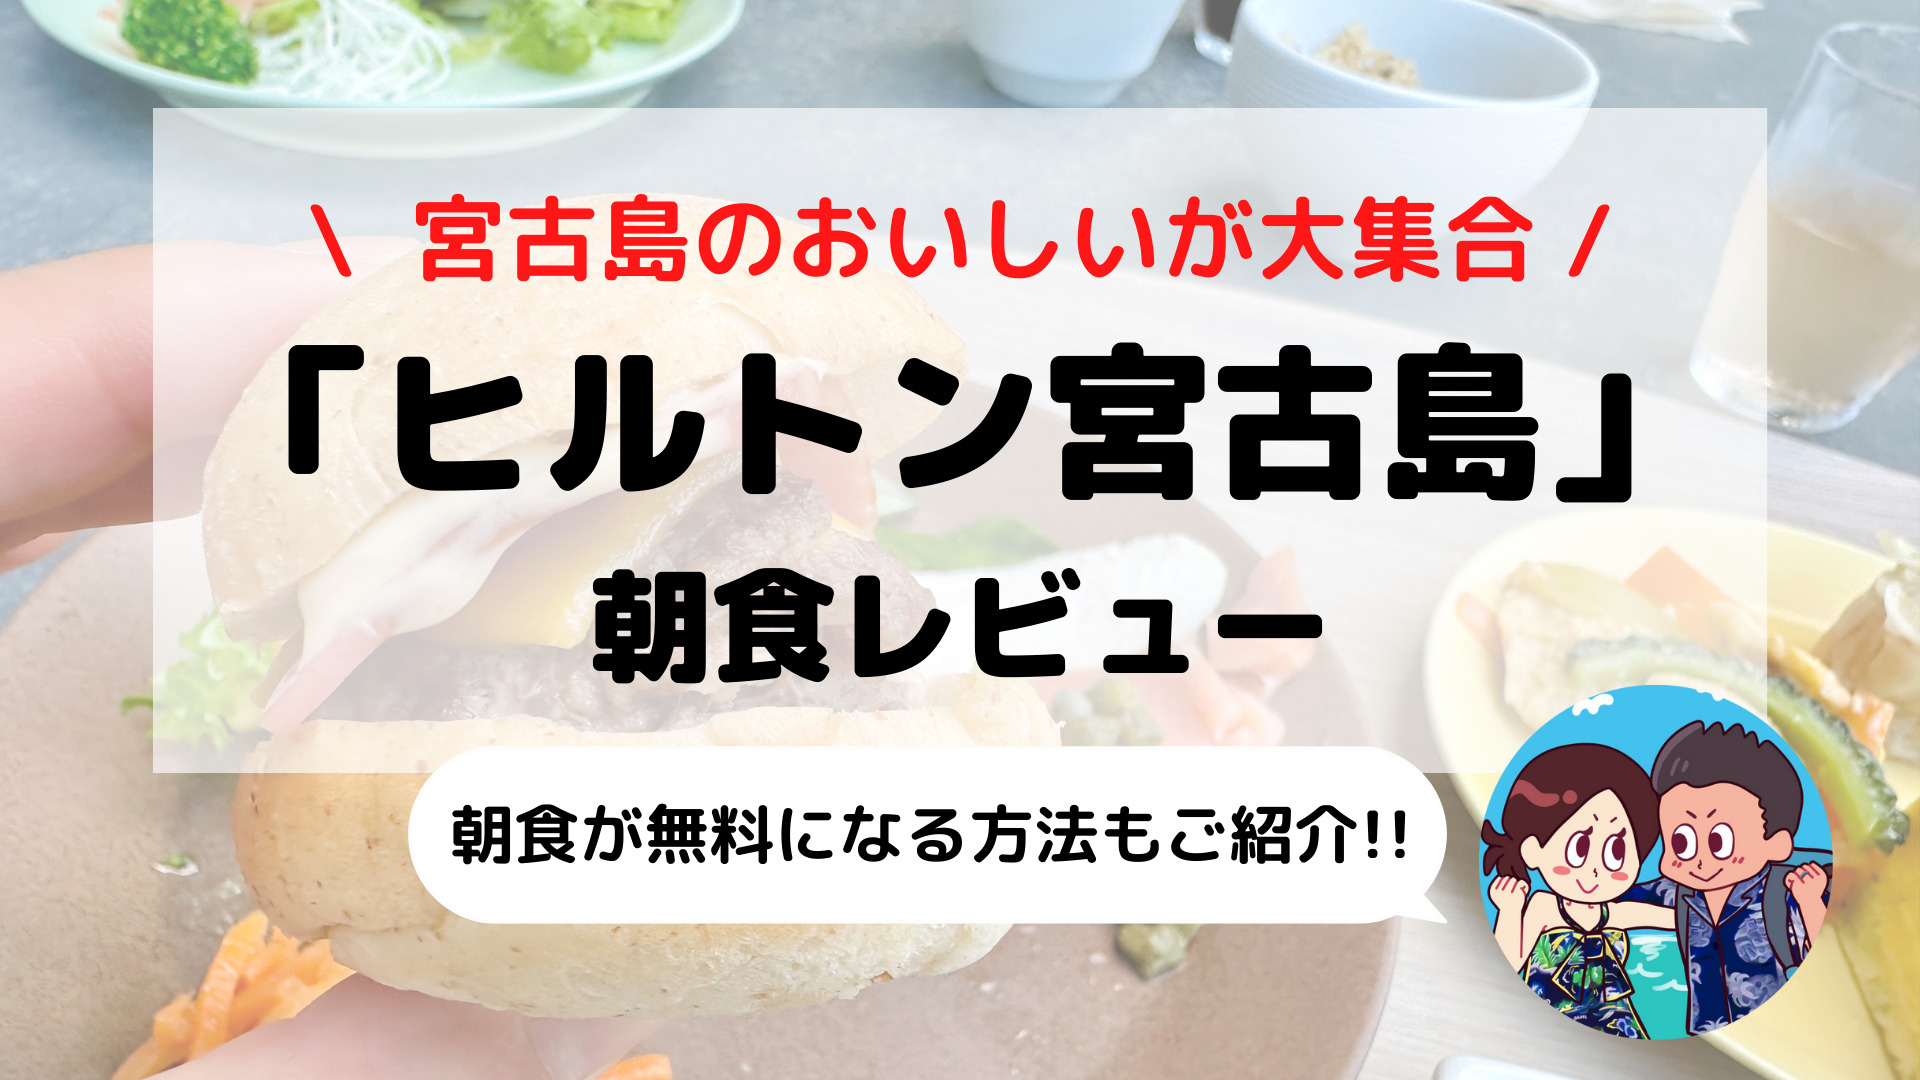 【ヒルトン宮古島】朝食ブログレビュー(メニュー/時間/料金など)